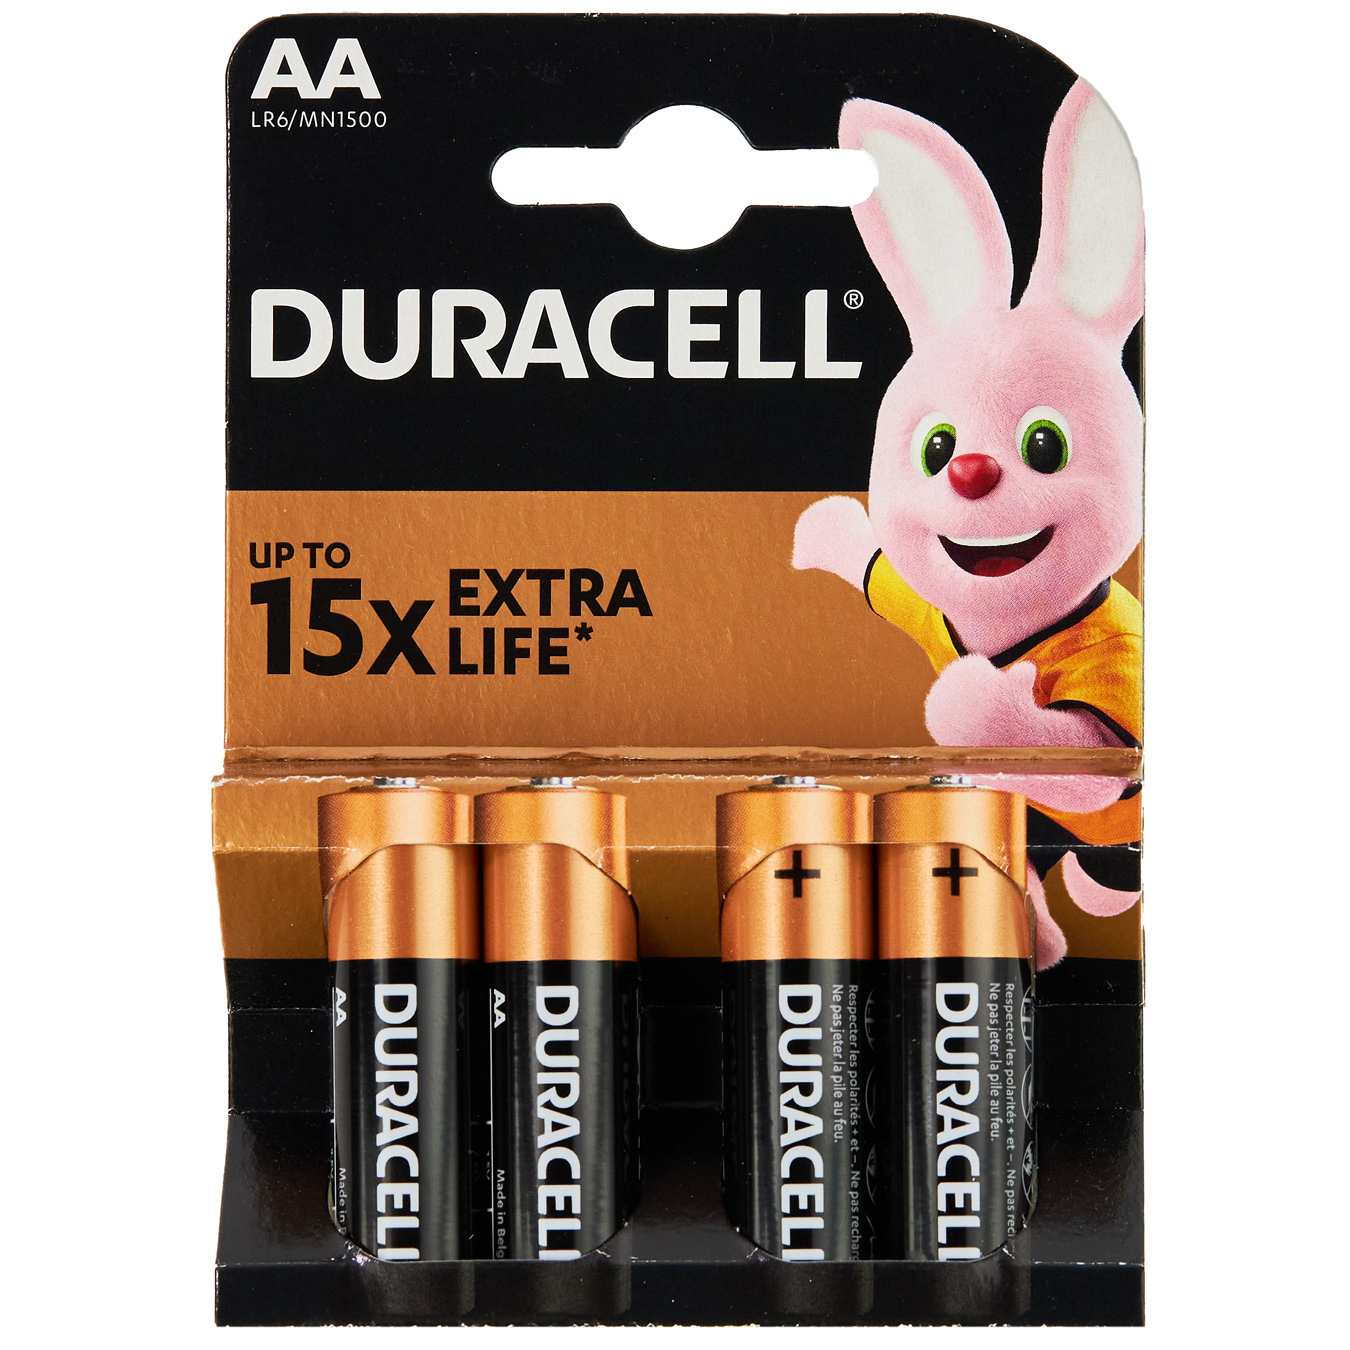 Duracell AA Alkaline Batteries 4pcs
